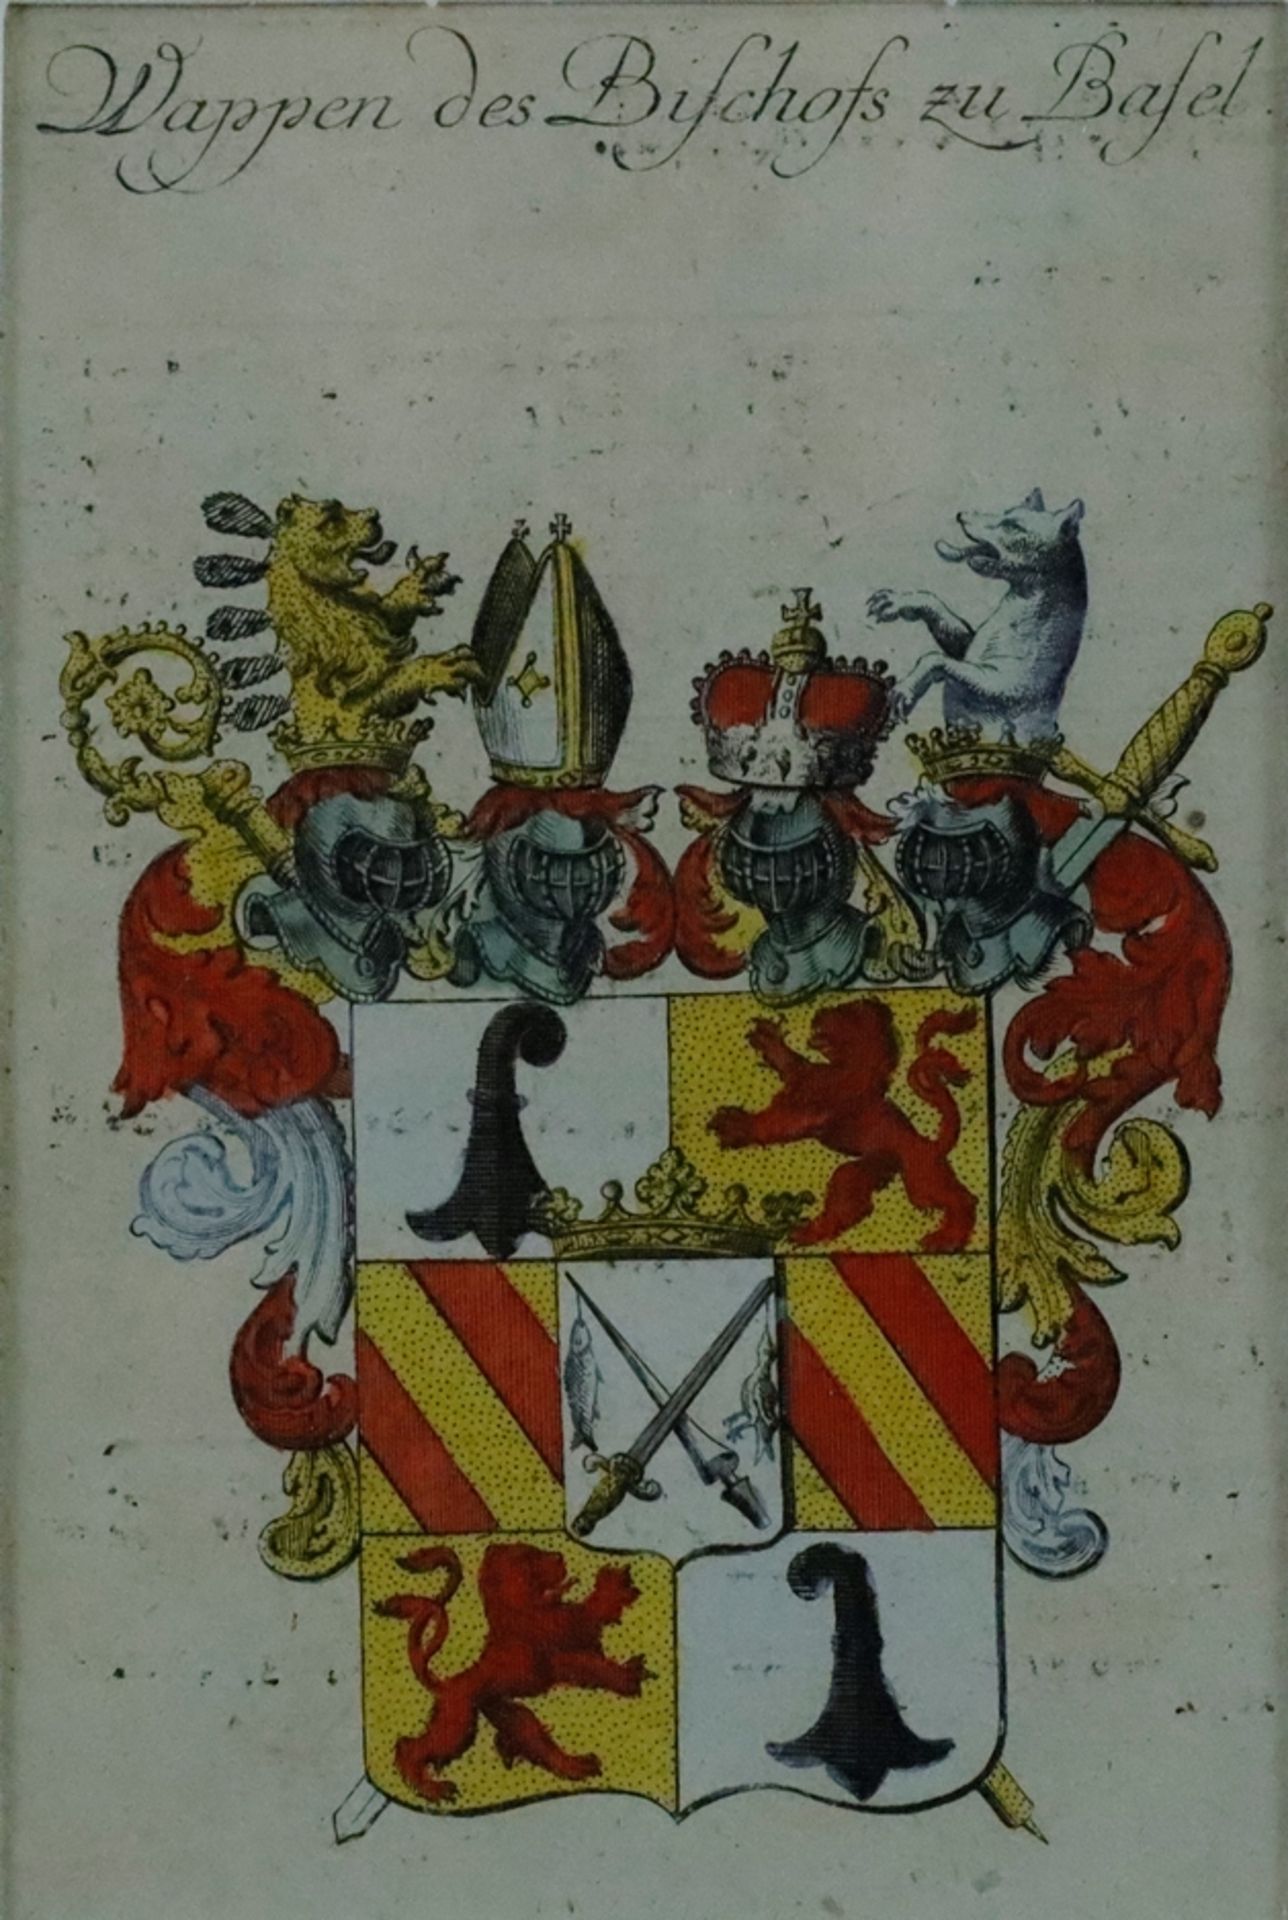 Wappen des Bischofs zu Basel - handkolorierter Kupferstich um 1750, es handelt sich um das Wappen d